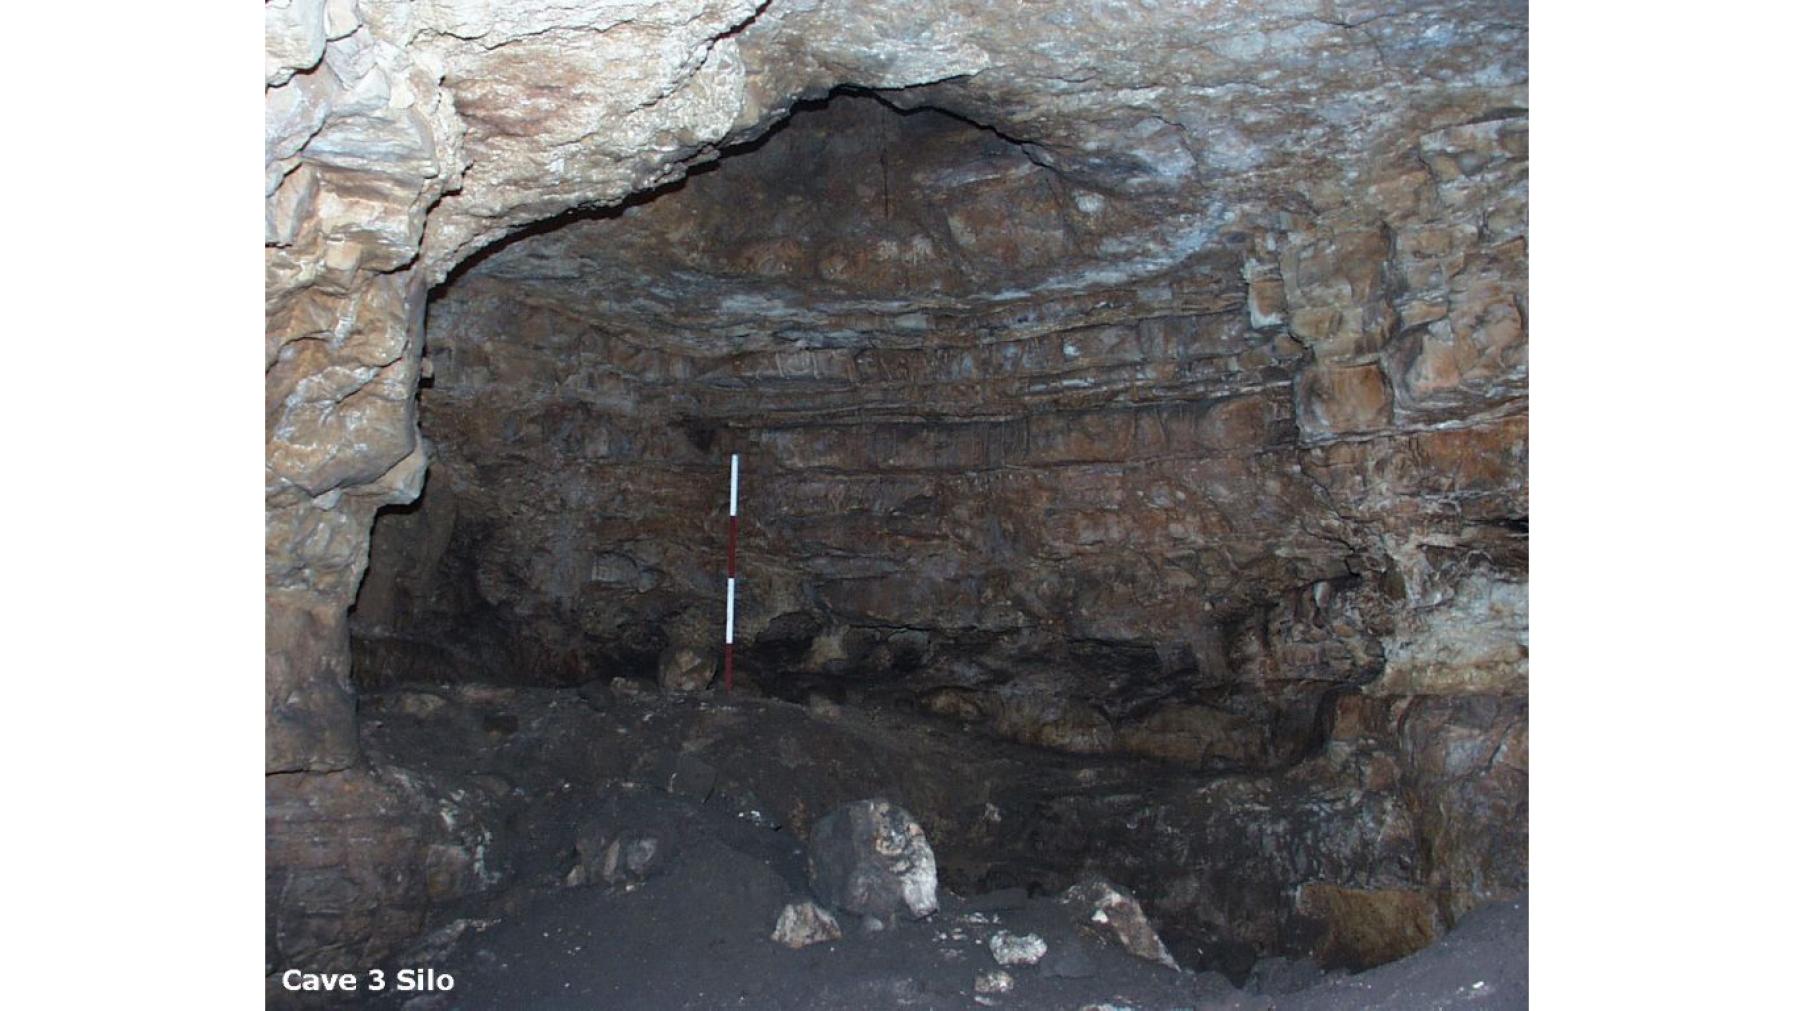 Cave 3 Silo